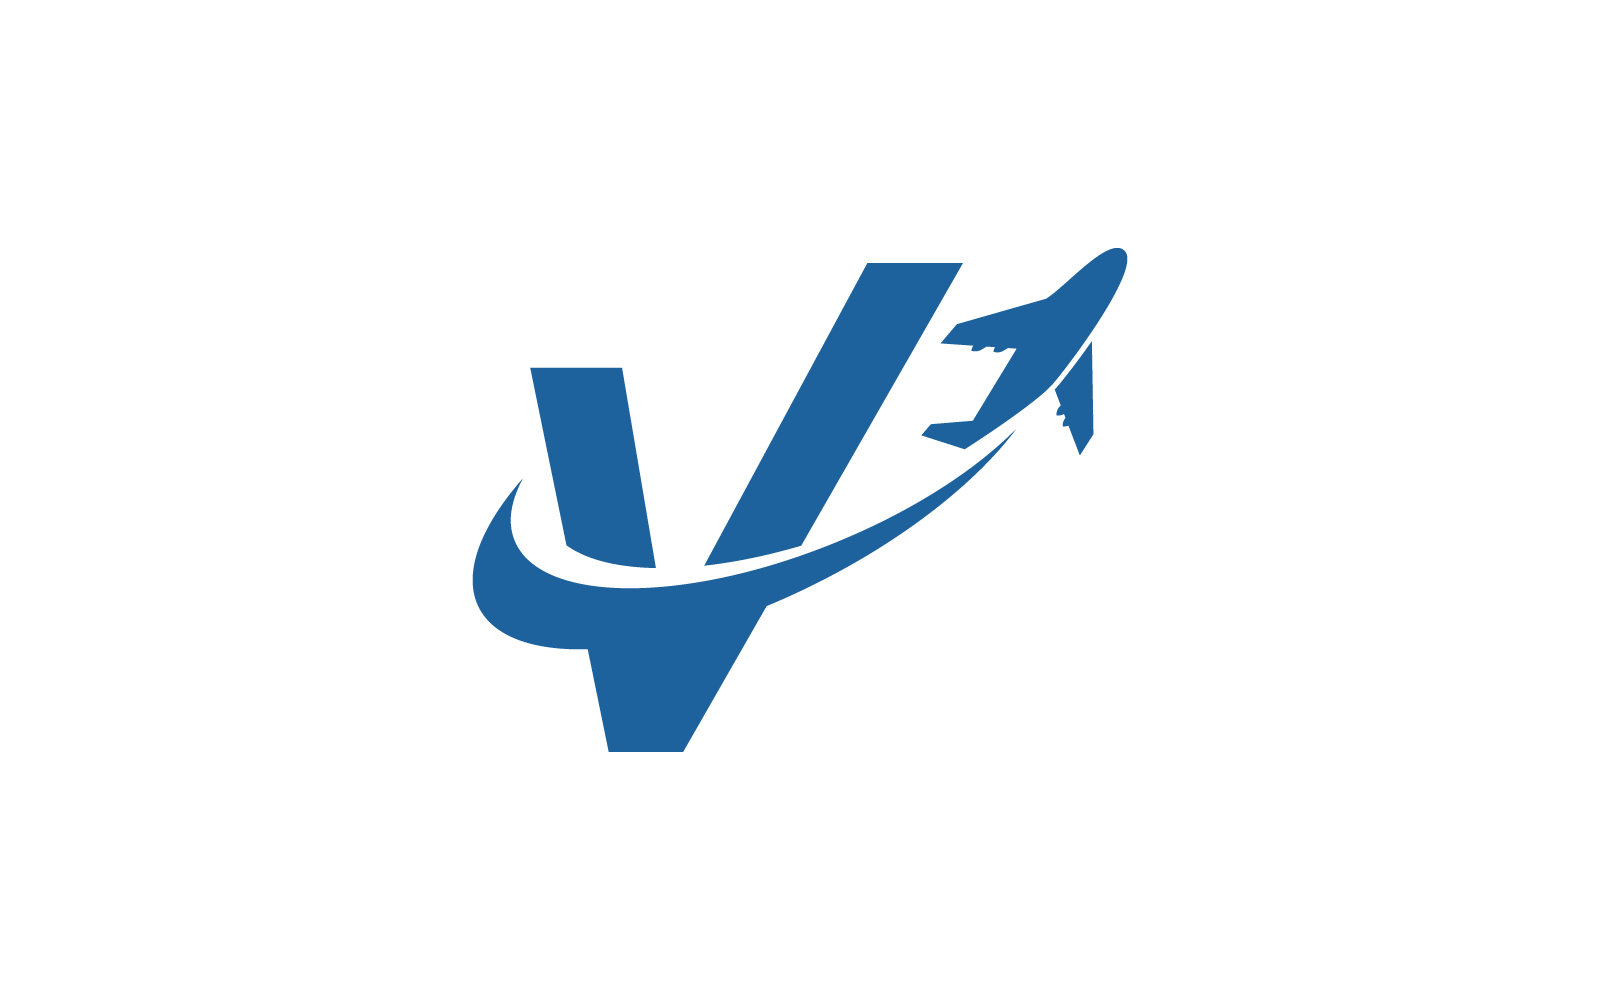 Air Plane V kezdeti logó vektor sablon